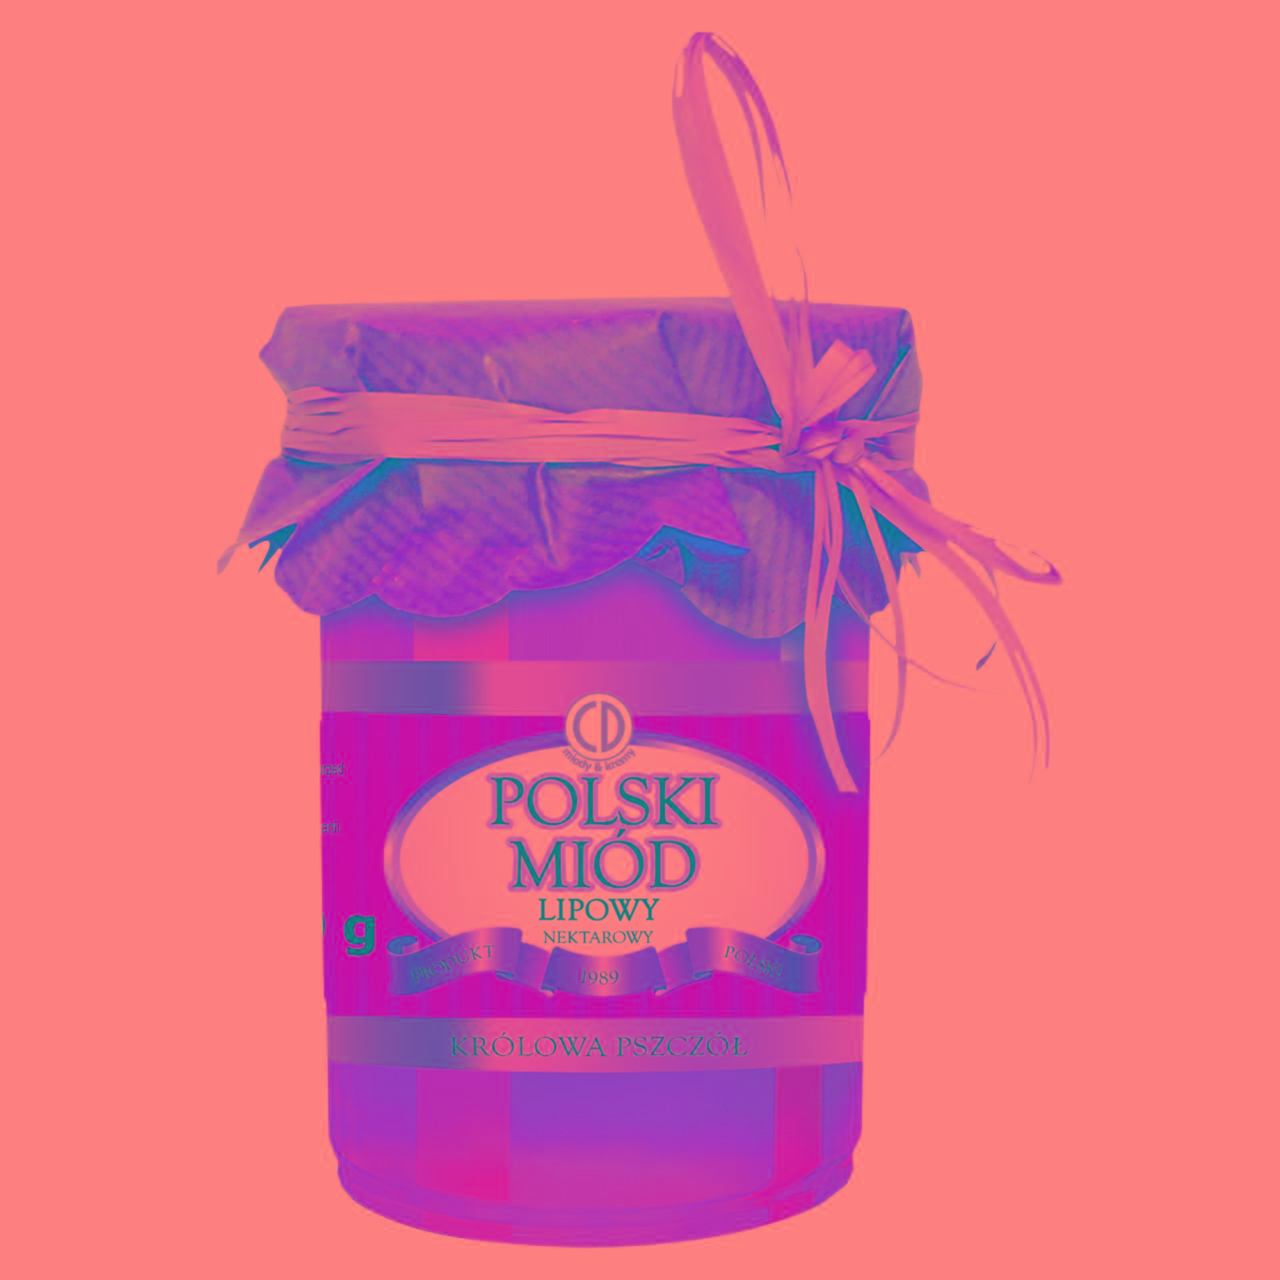 Zdjęcia - Królowa Pszczół Polski Miód lipowy nektarowy 500 g